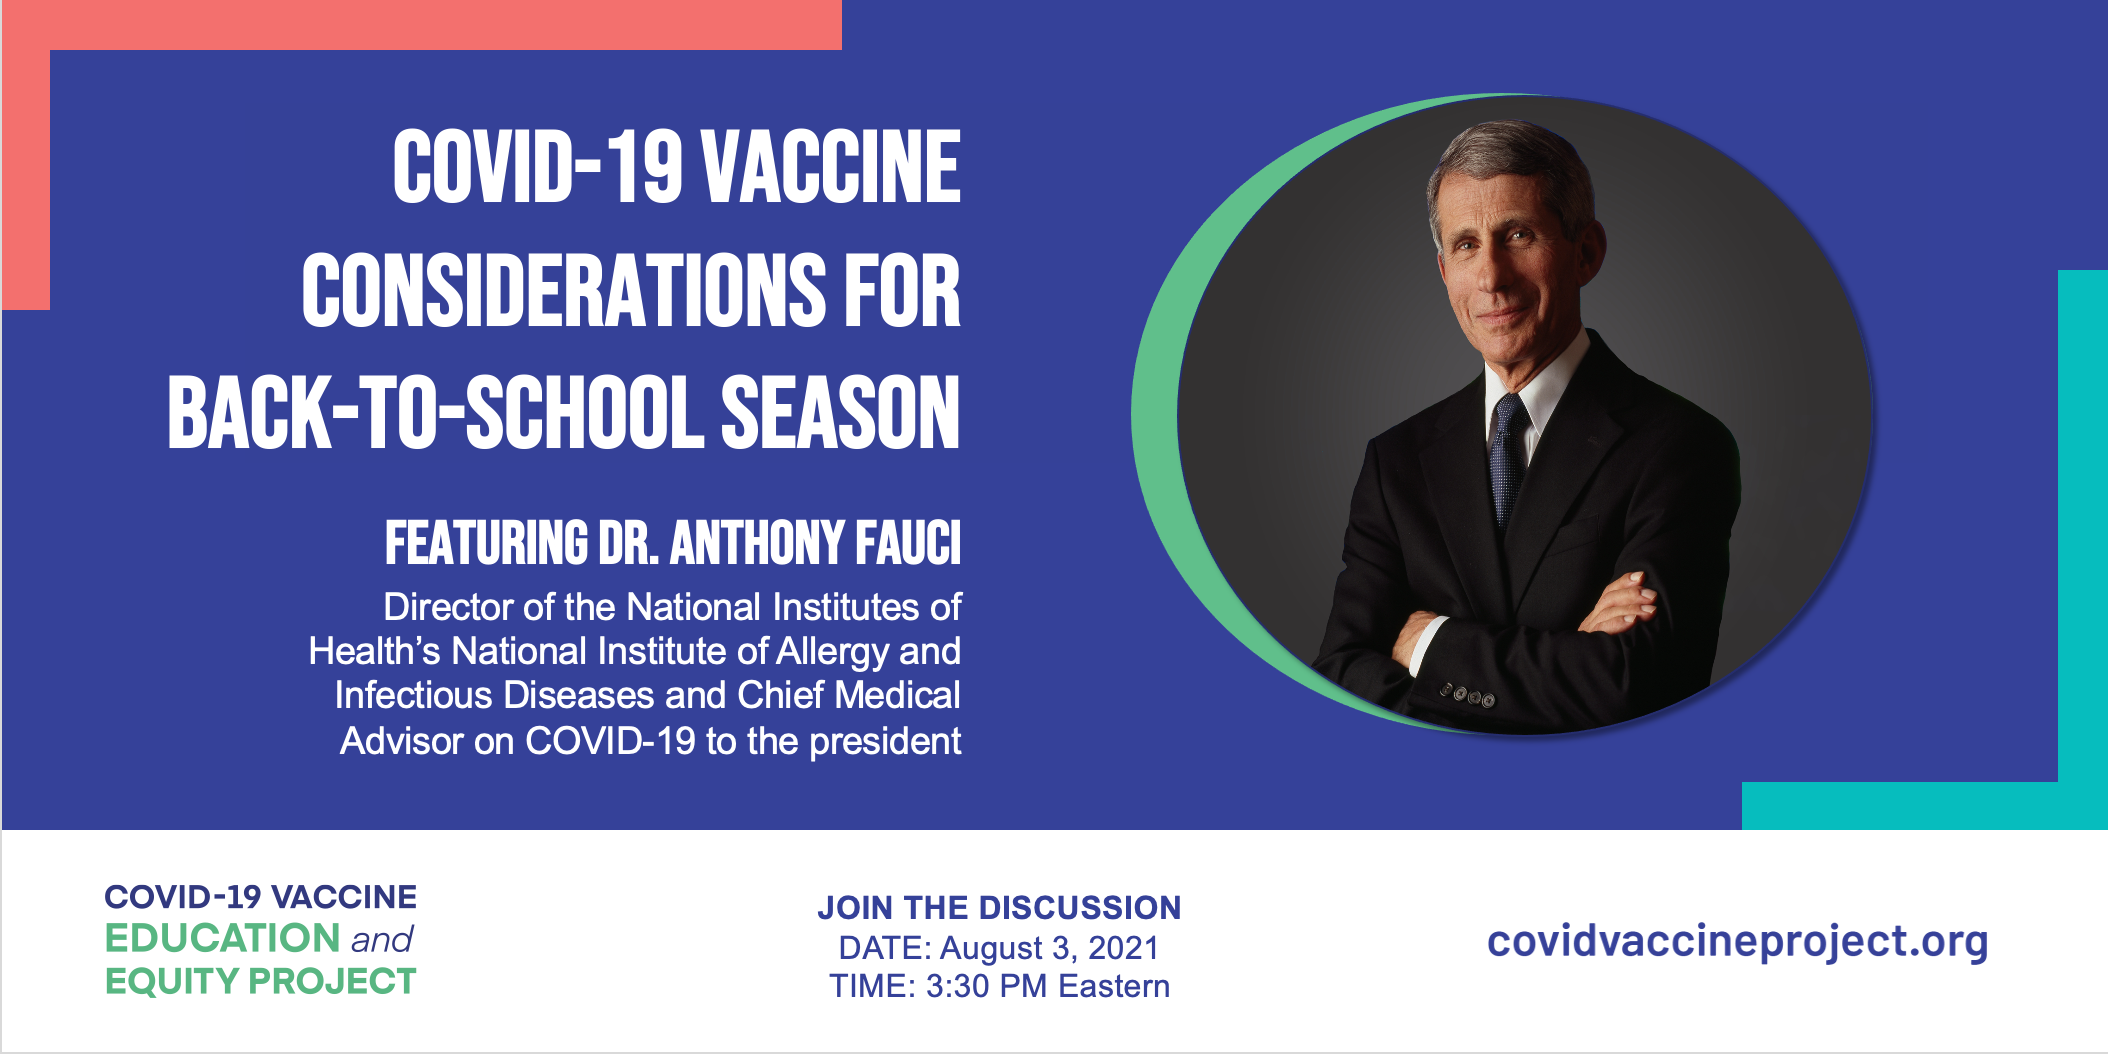 El Proyecto de Educación y Equidad en materia de Vacunas contra el COVID-19 realizó un seminario virtual con el fin de responder las preguntas más frecuentes acerca de las vacunas y proporcionar información a los padres para el retorno seguro a clases